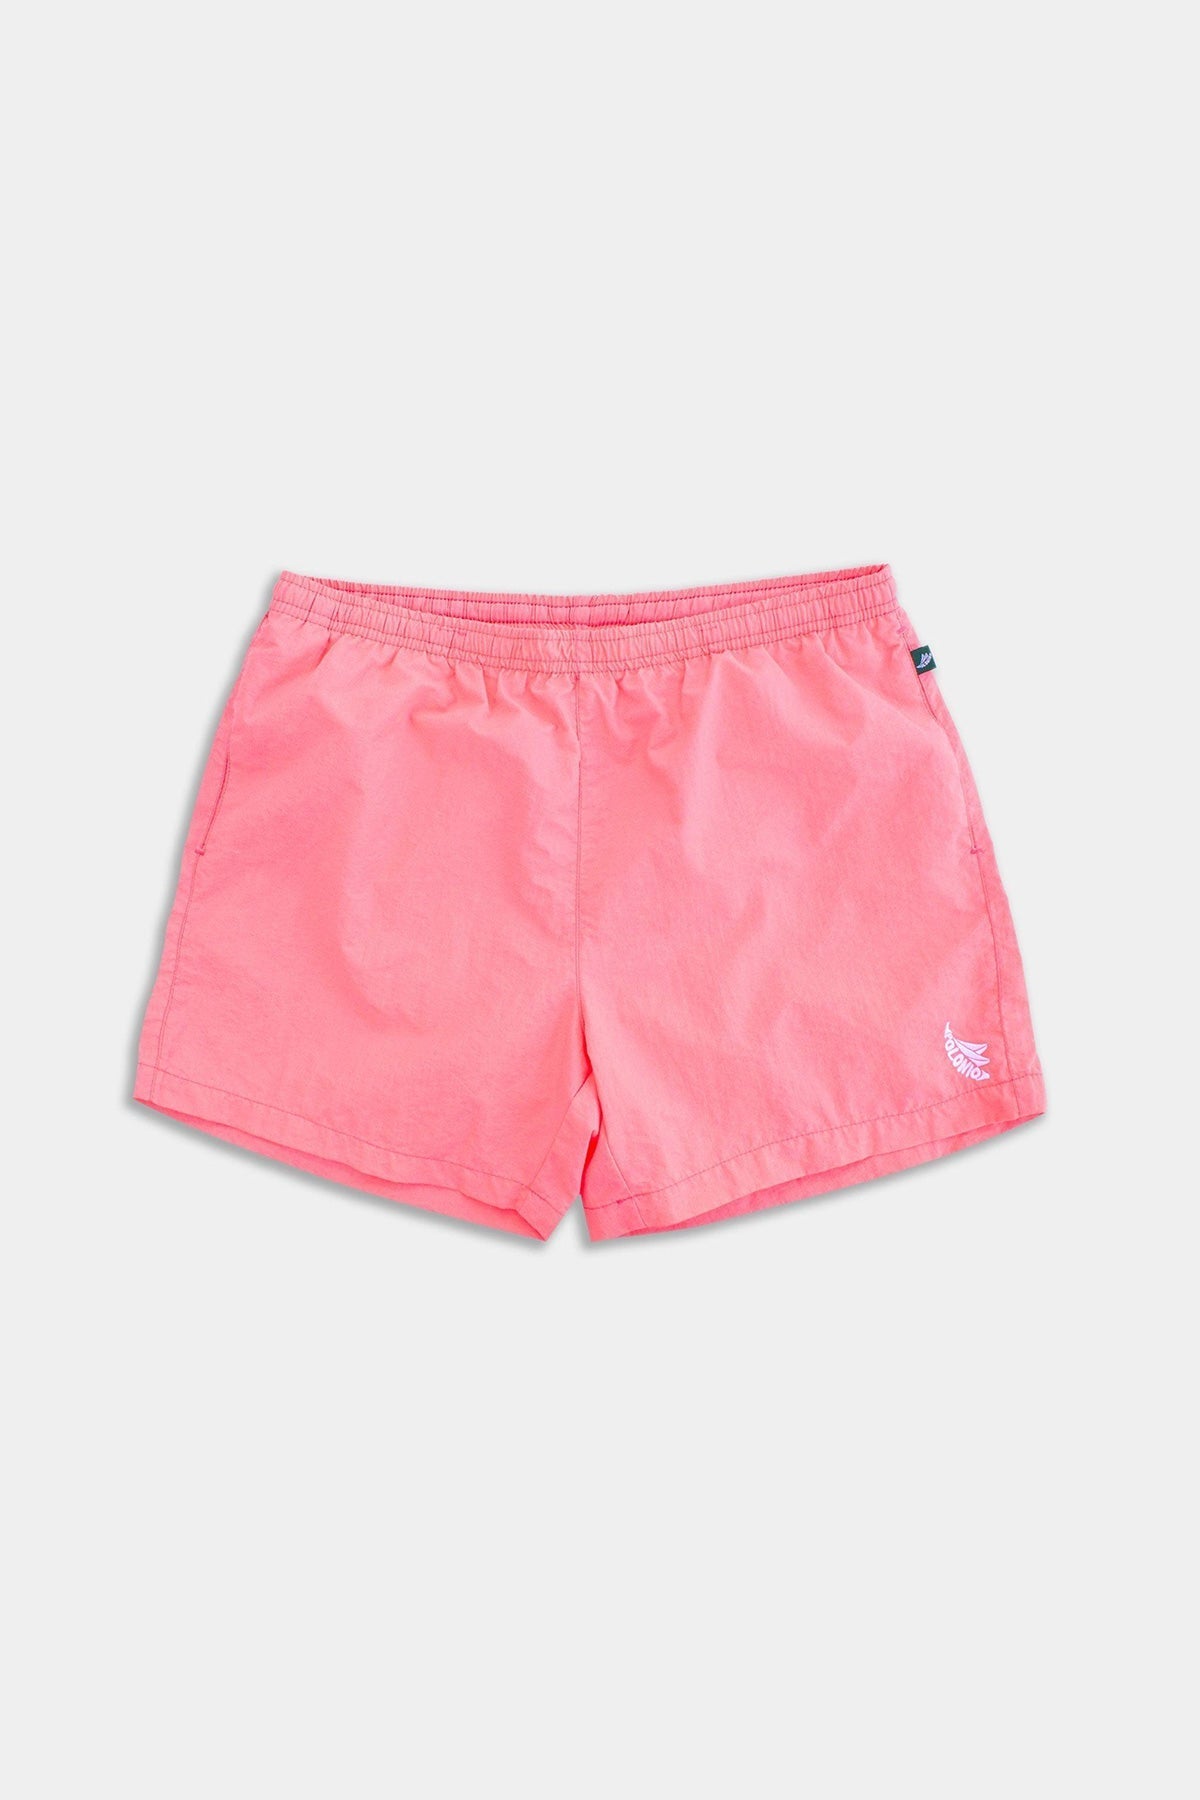 Pink Crinkle Nylon Runner Swim Trunks - Polonio